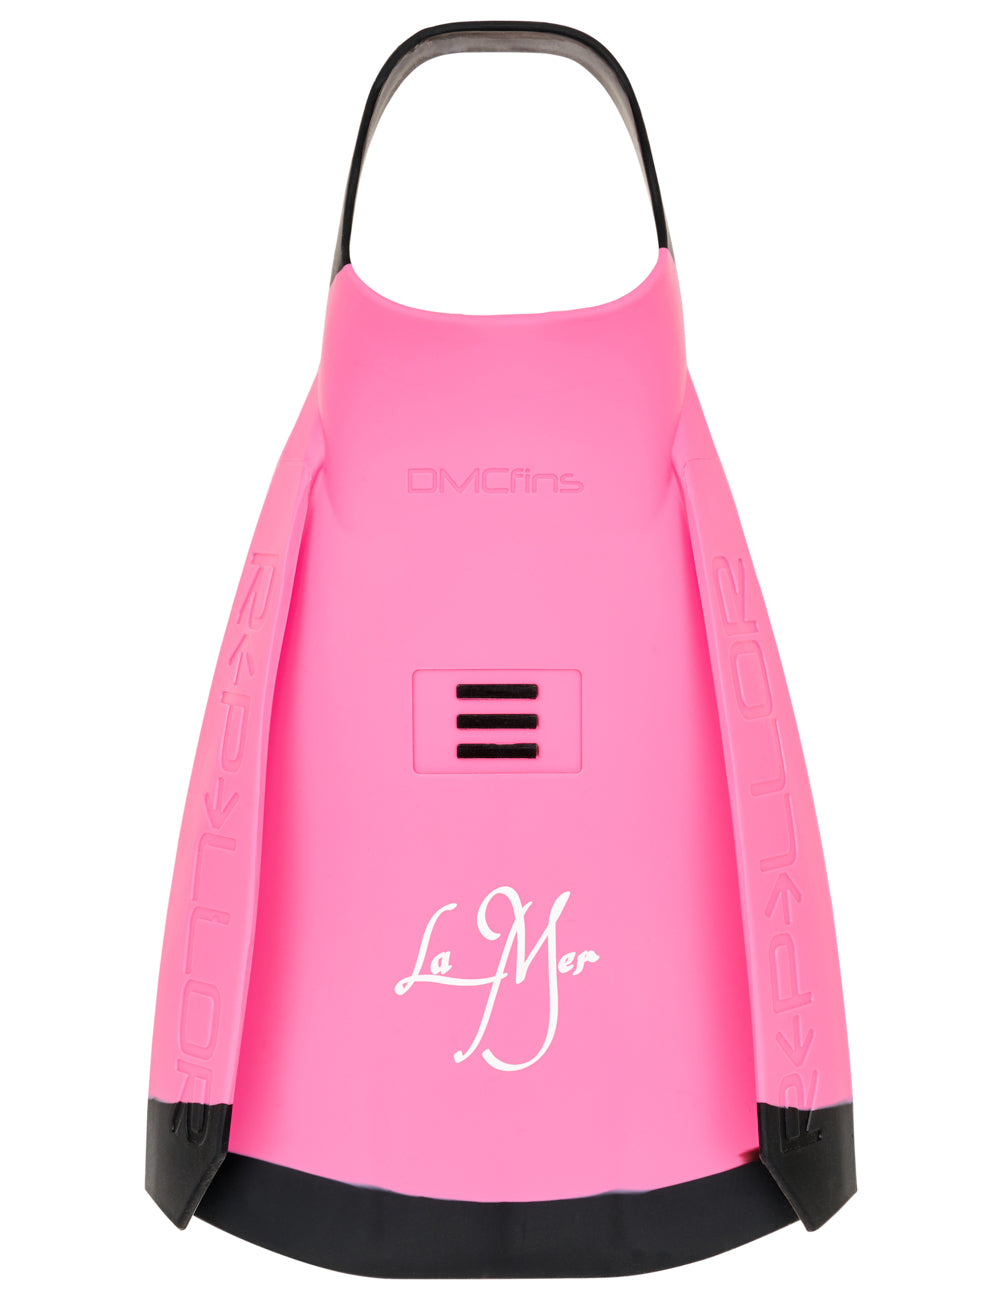 Repellor Surf Fins - Pink/Black